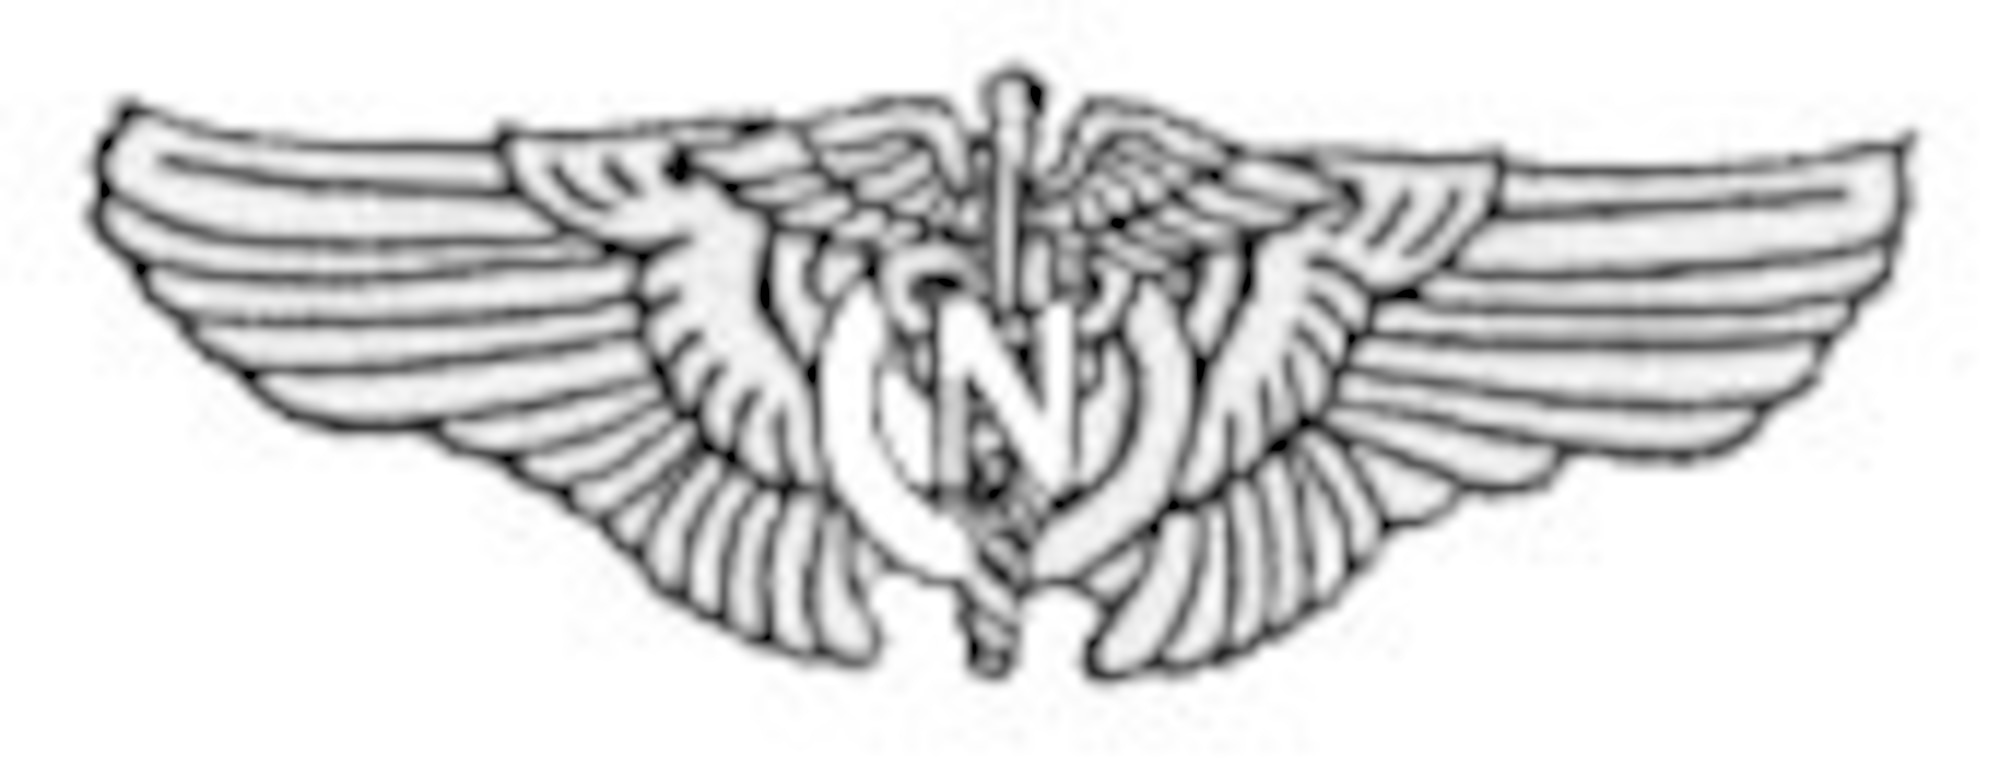 USAAF Flight Nurse Badge.